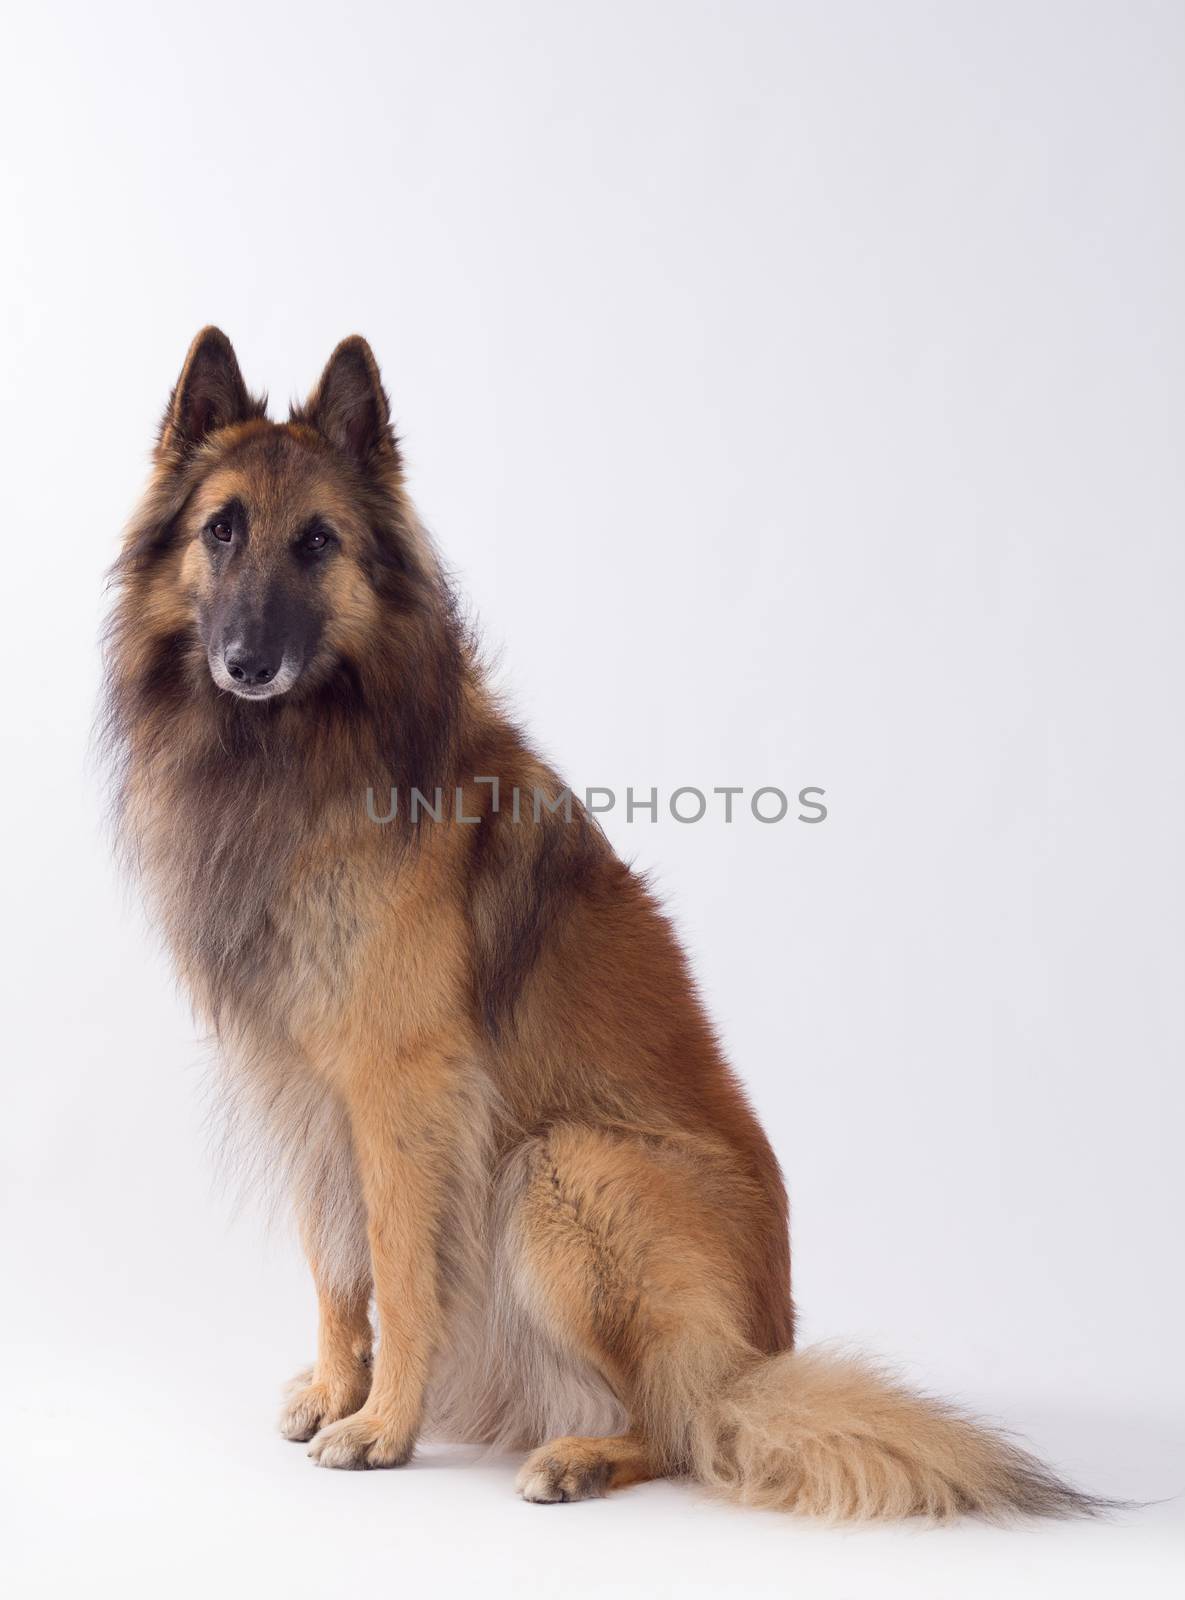 Tervuren dog sitting, studio background by avanheertum